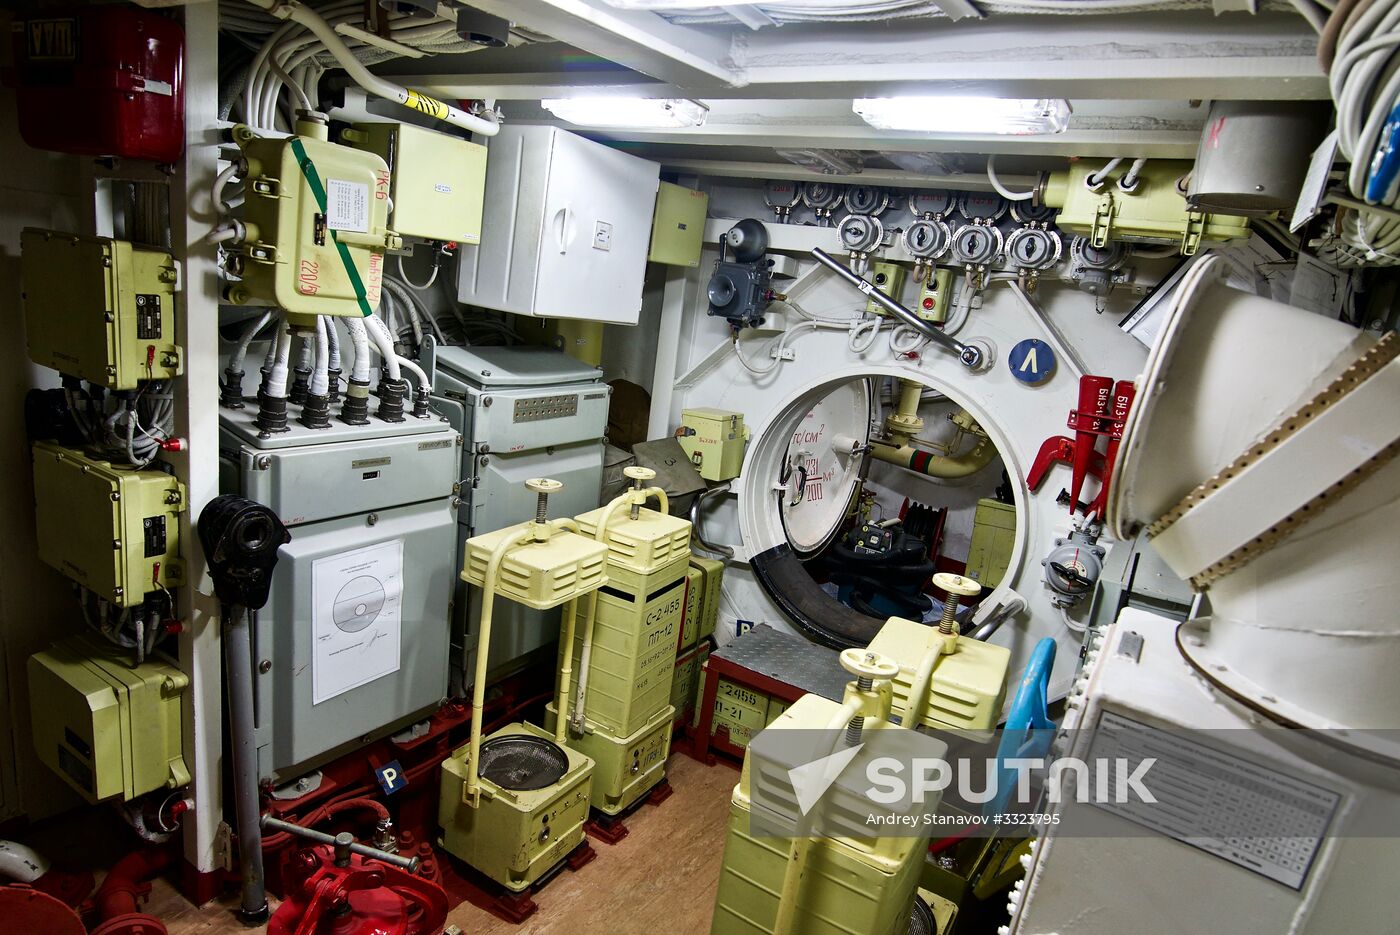 Submarine Novorossiysk